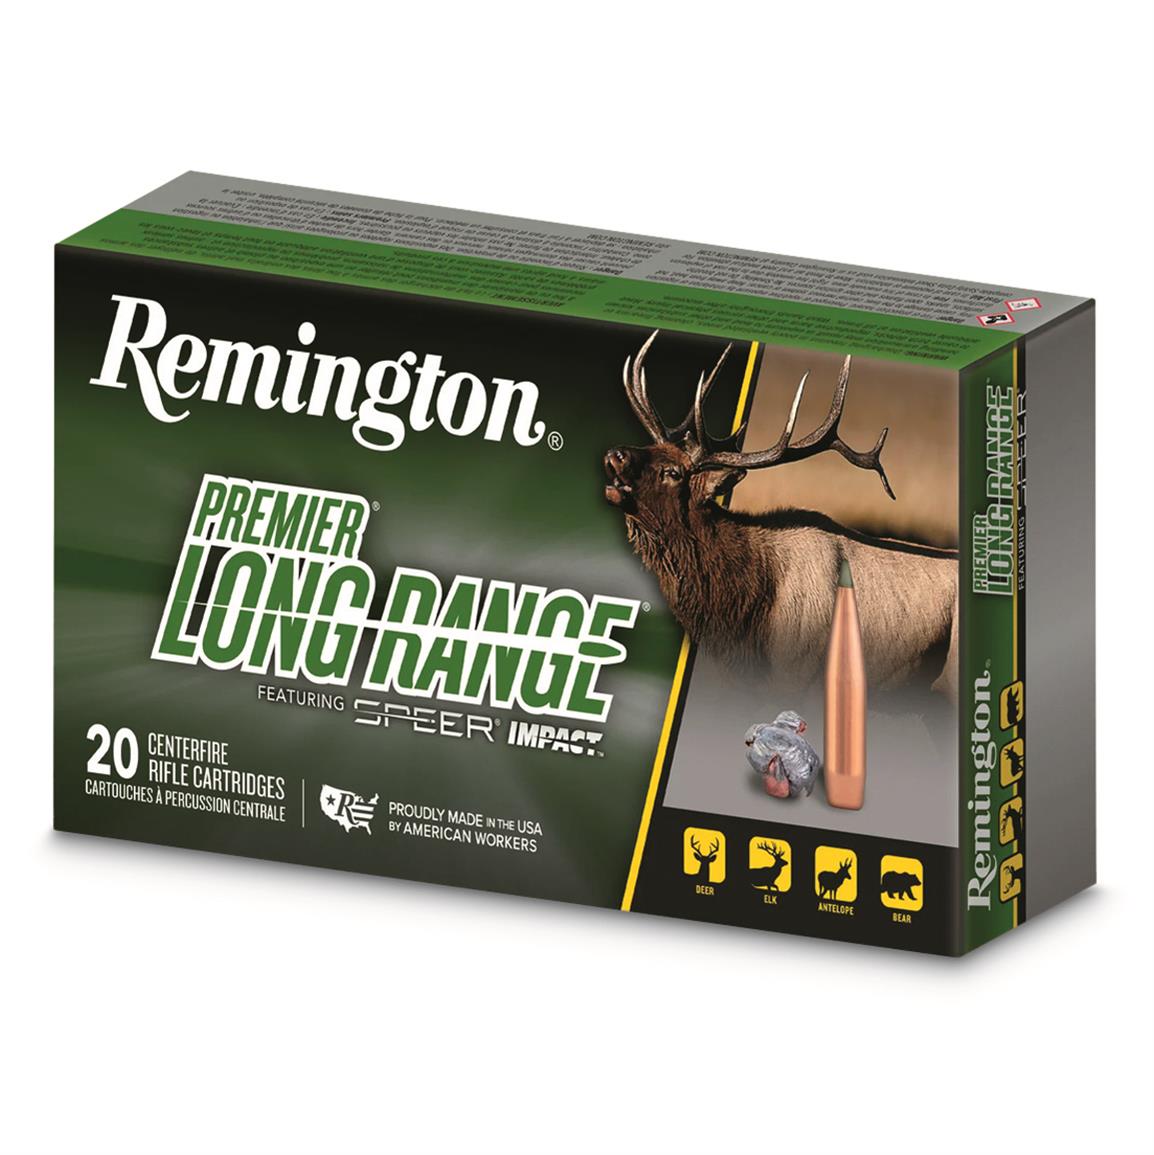 Remington Premier Long Range, 7mm Rem. Mag., Speer Impact, 175 Grain, 20 Rounds